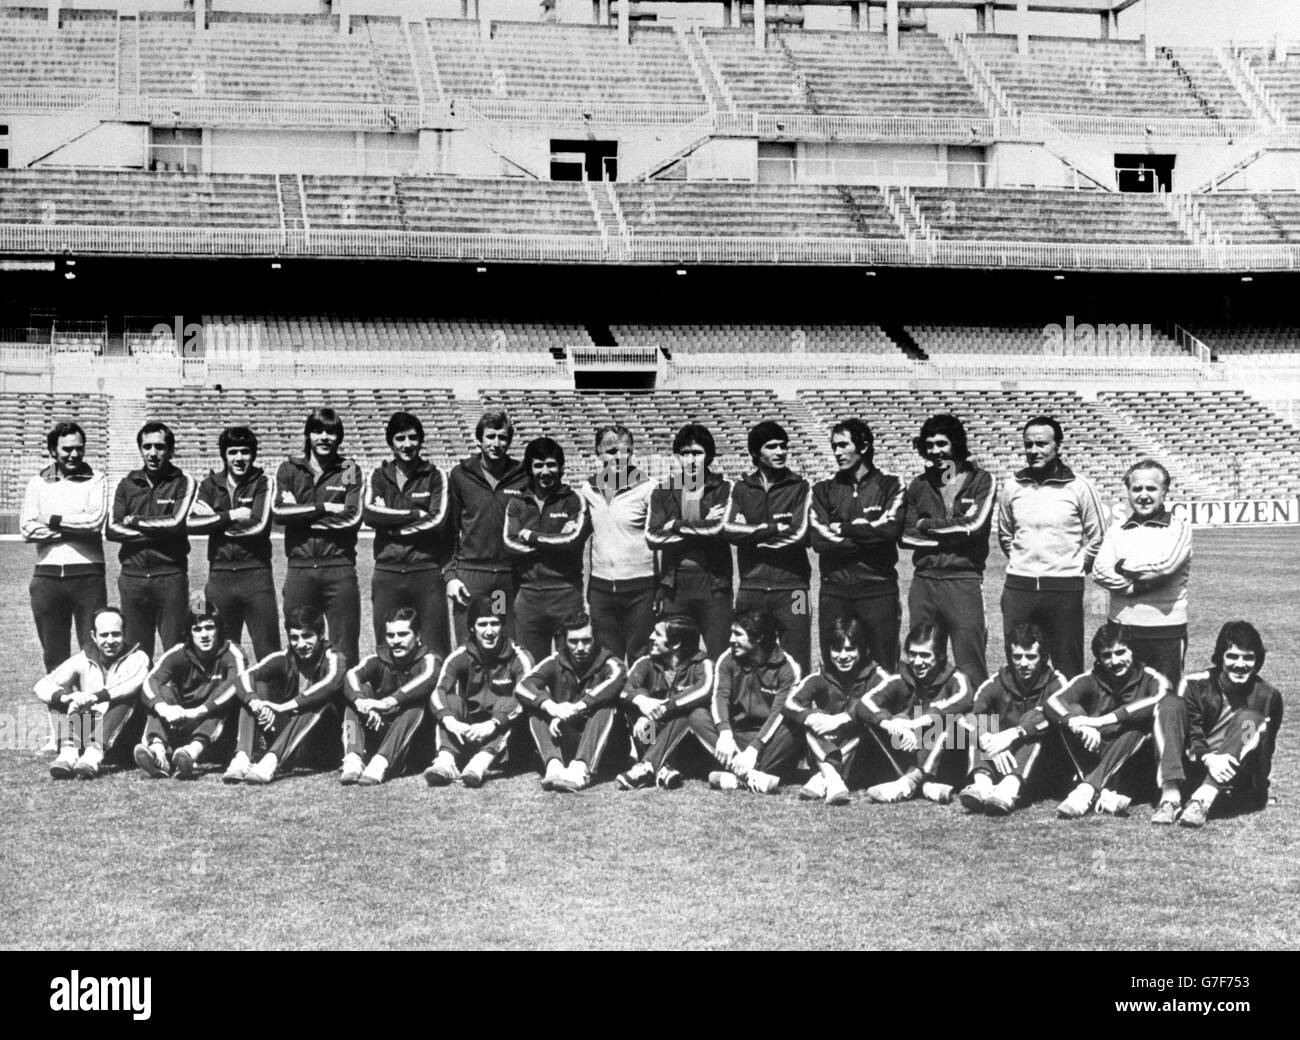 L'équipe espagnole qui est prévue pour jouer à la coupe du monde de la FIFA 1978 en Argentine.(Back row, l-r) Docteur, Ascensin, Dani, Migueli,Urruticochea, Rexach, Juanito, Kubala (entraîneur), Uria,Biosca, Pirri, RUV Ruben Cano, Gustavo Biosca (deuxième formateur) et un technicien.(Avant, l-r) mur (masseur), Arconada, Olmo, San Jose,Maranon, Quini, Guzman, Santillana, Marcelino,Cardenosa, de la Cruz, Migual Angel et Leal. Banque D'Images